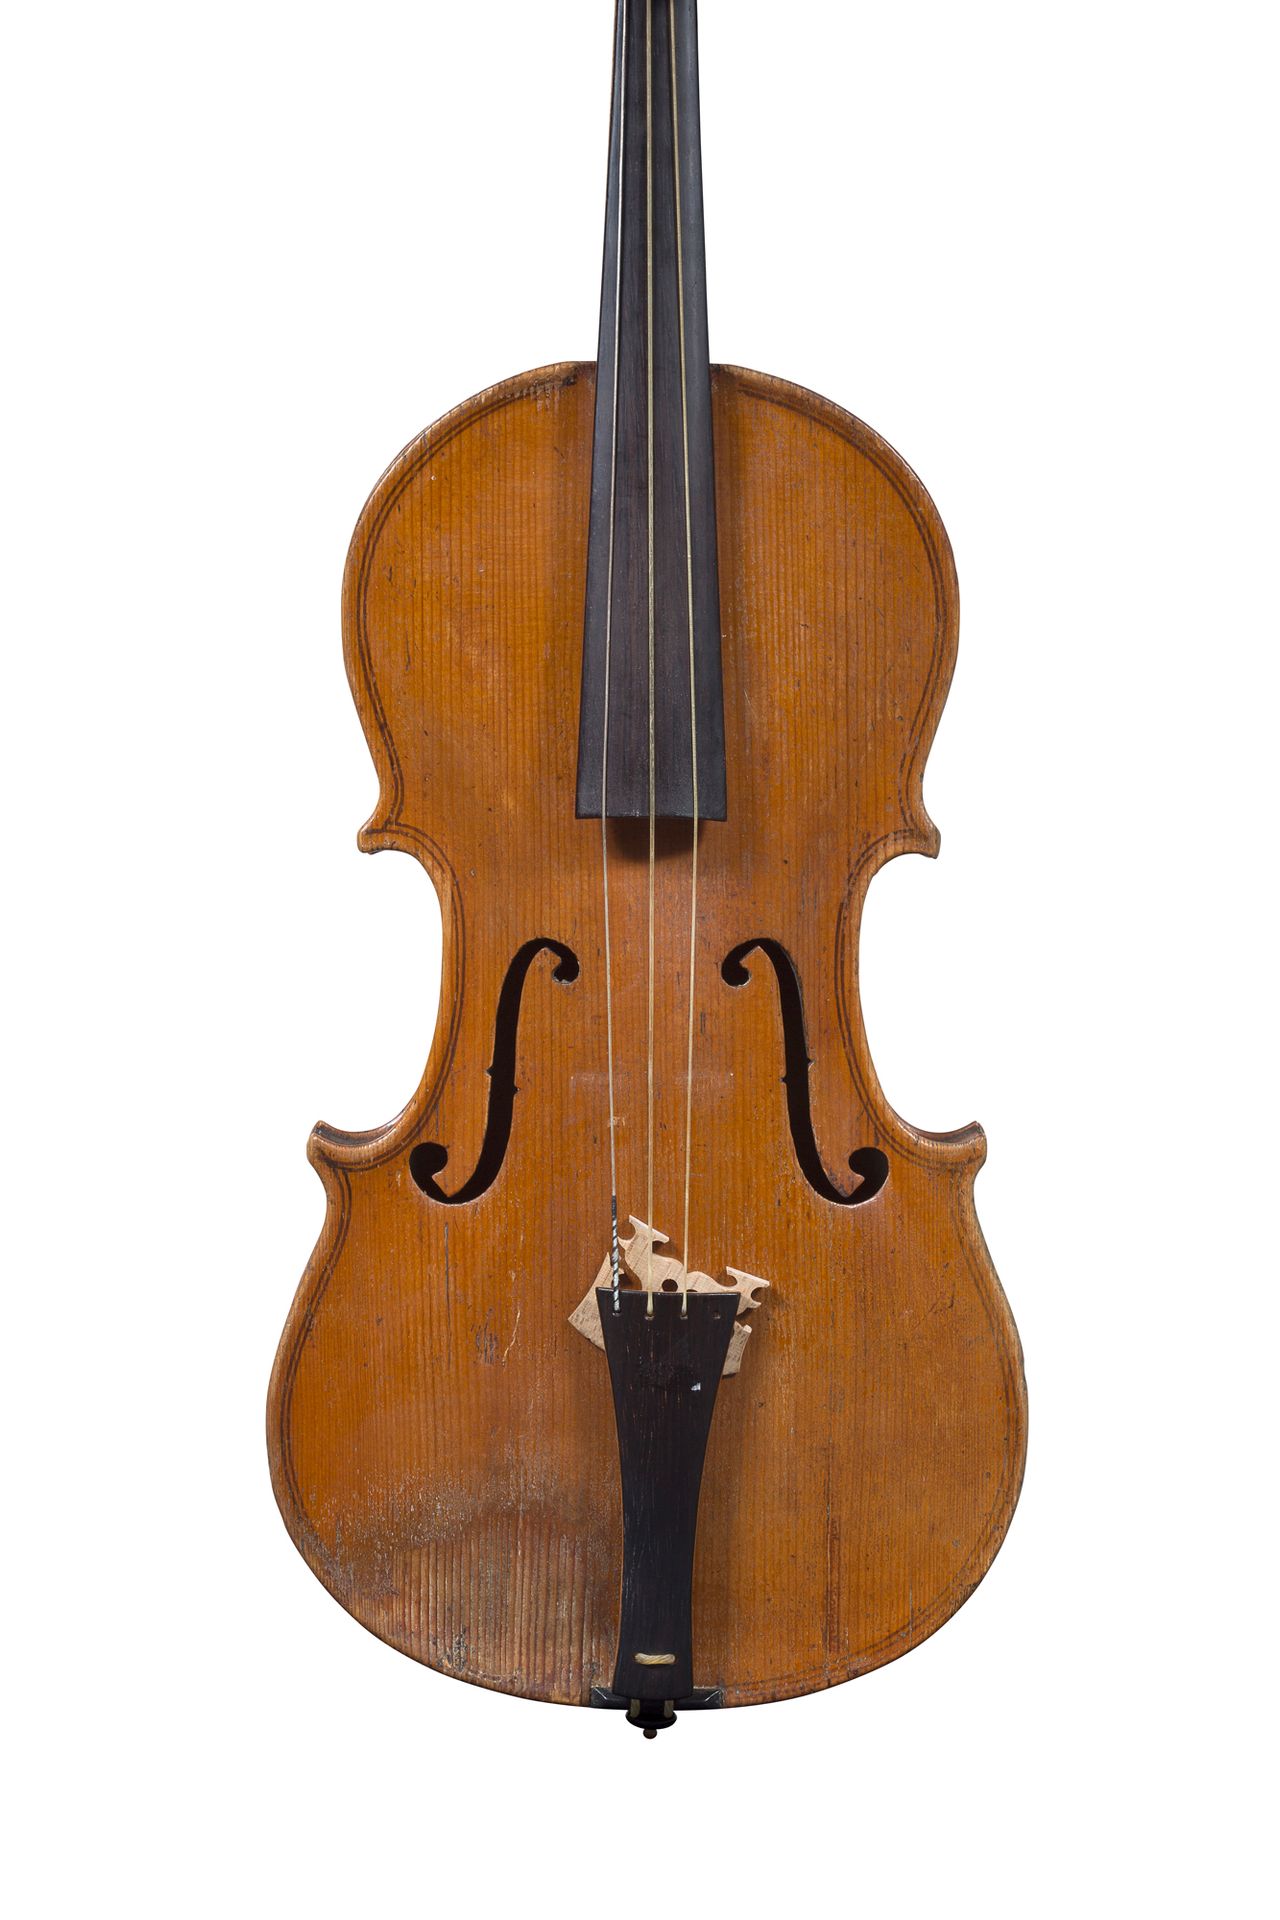 Null 米勒库尔制造的巴洛克小提琴
18世纪的作品，有原来的琴颈
右侧台面和腮托下有裂痕
状态良好 
背面364毫米